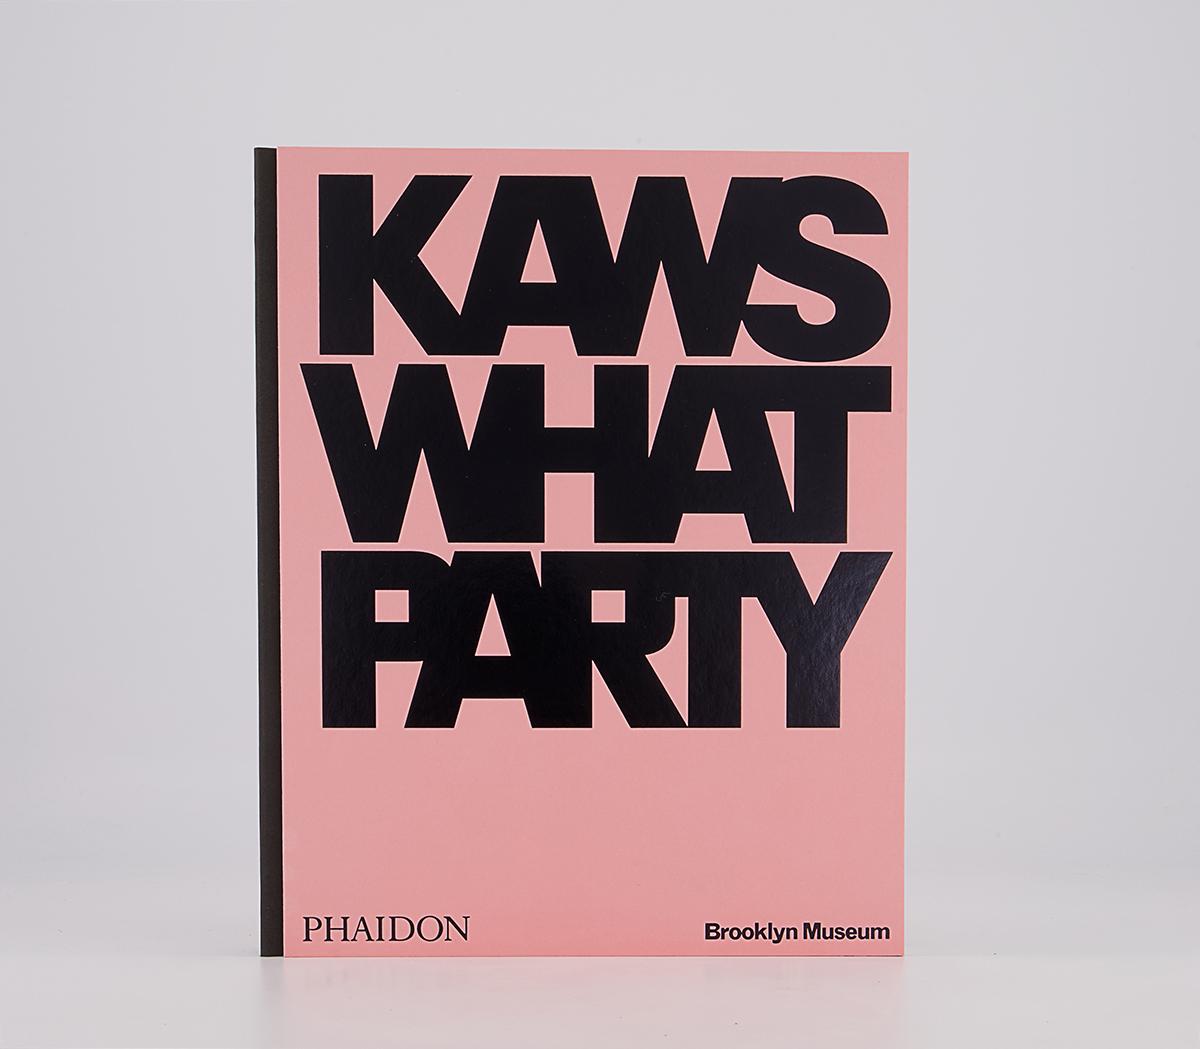 PhaidonPhaidon - KAWS: What PartyKaws What Party